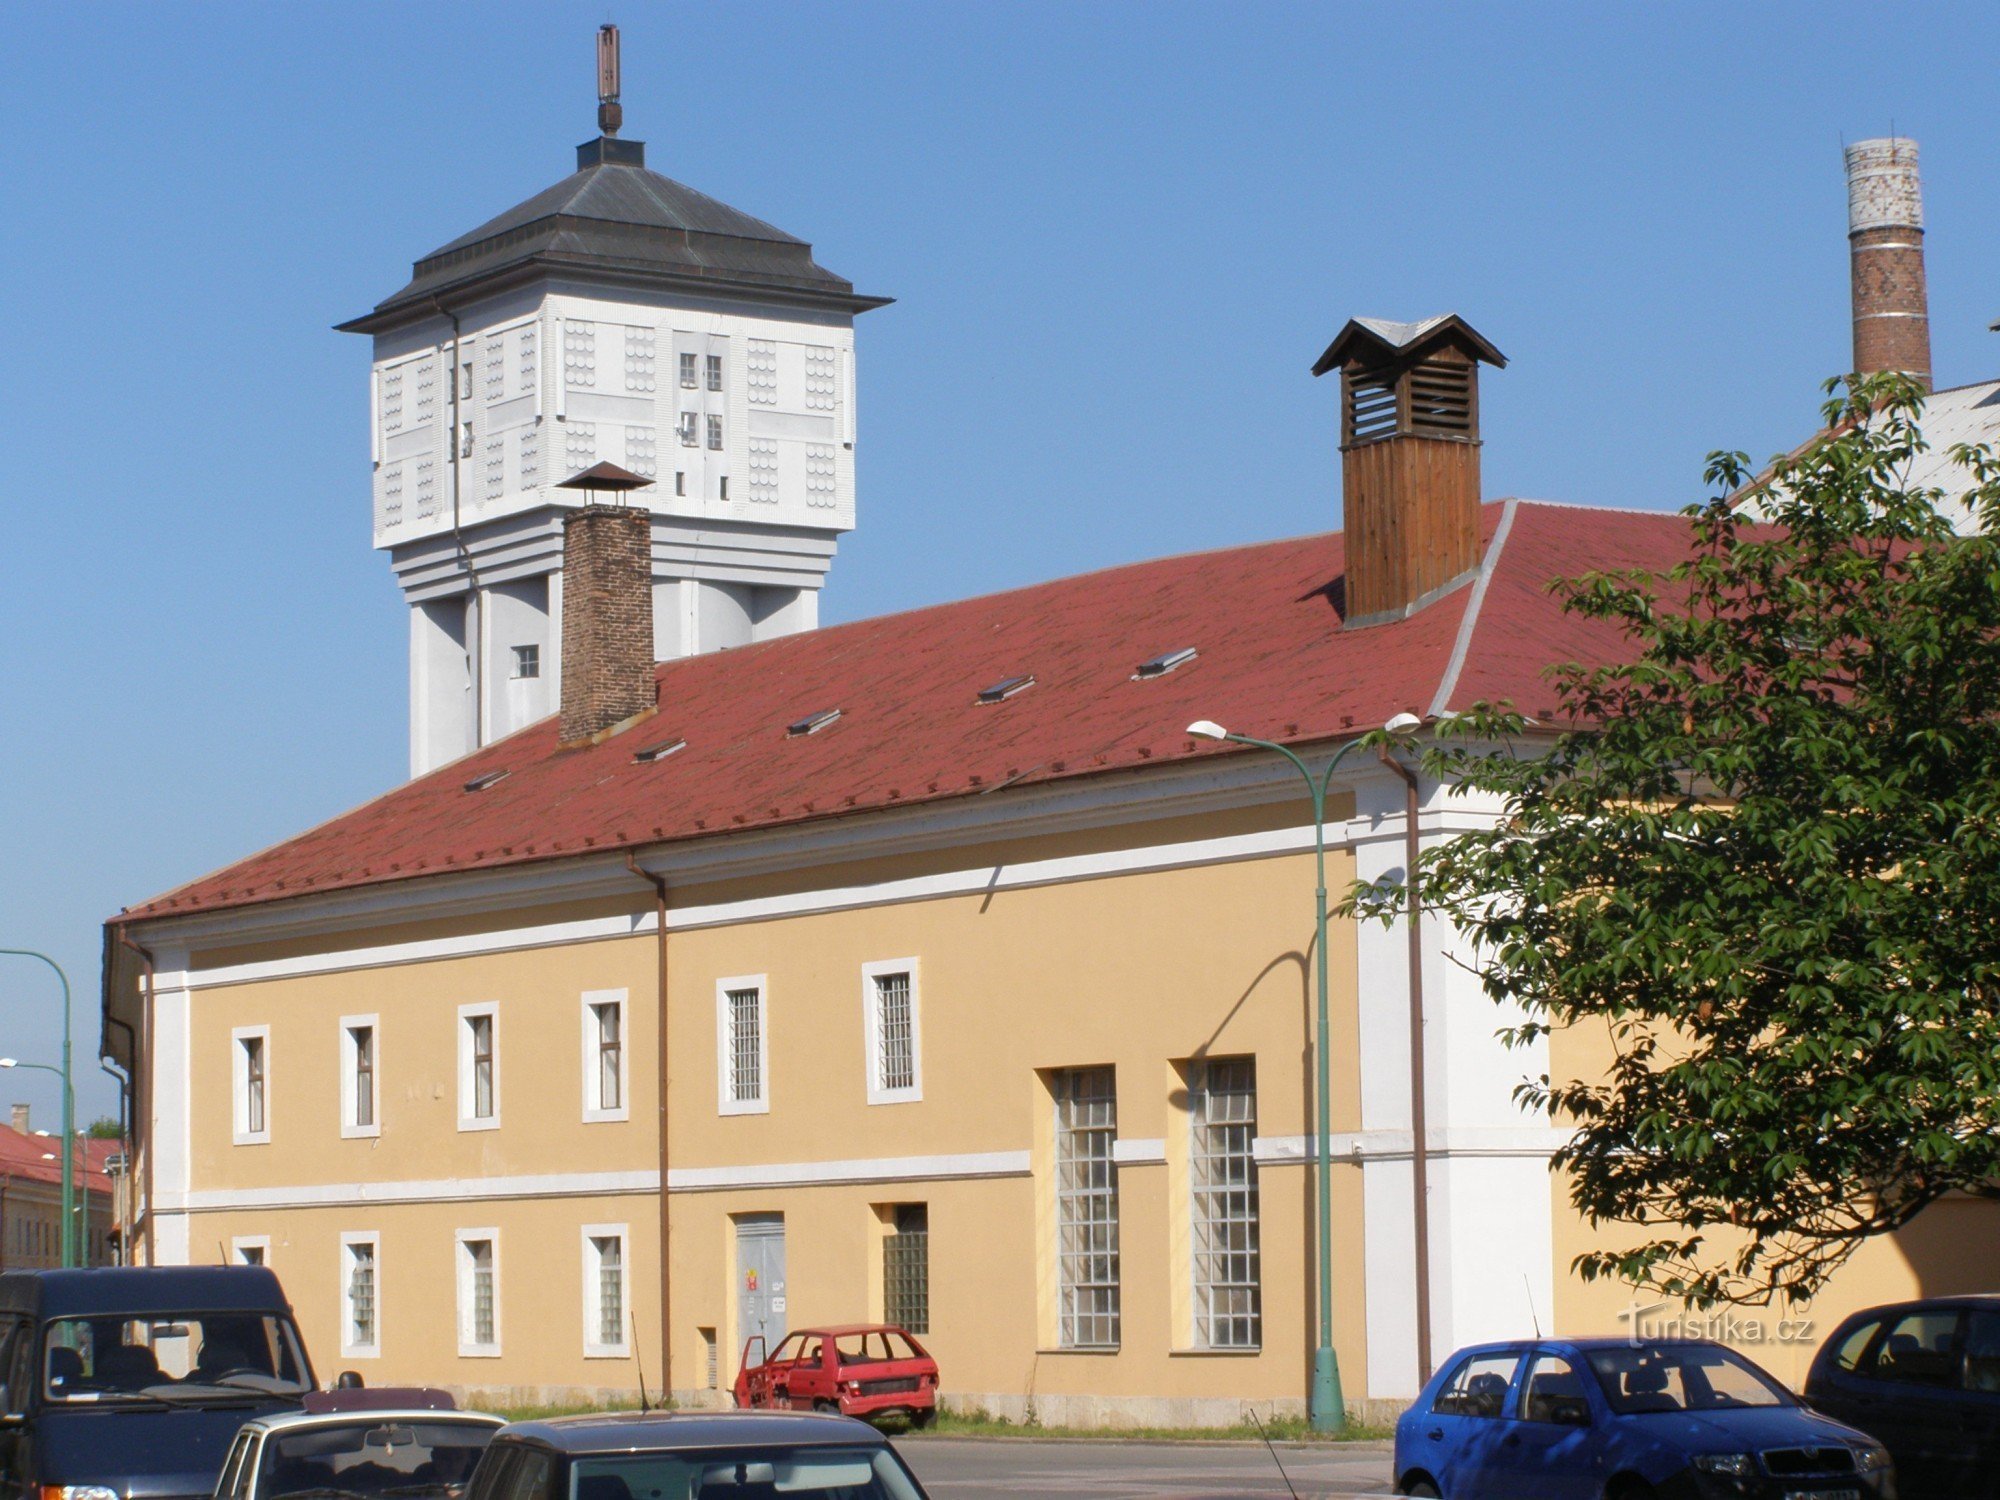 Йозефов - водонапорная башня и пивоварня